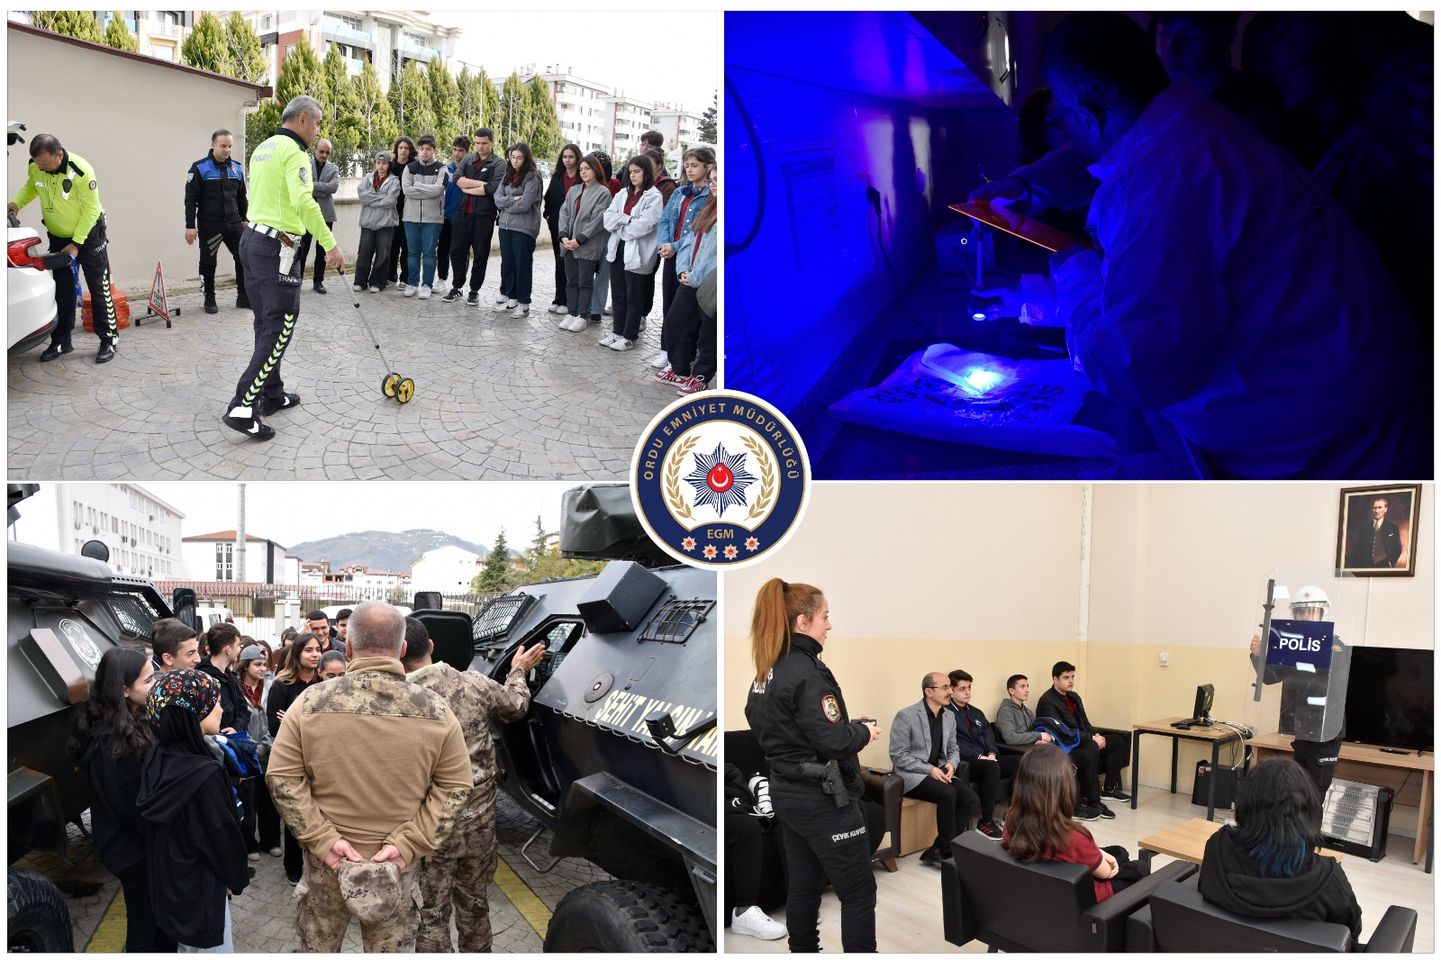 Ordu İl Emniyet Müdürlüğü, Öğrencilere Polis Mesleğini ve Genel Güvenlik Bilgilerini Aktaran Toplum Destekli Proje Başlattı